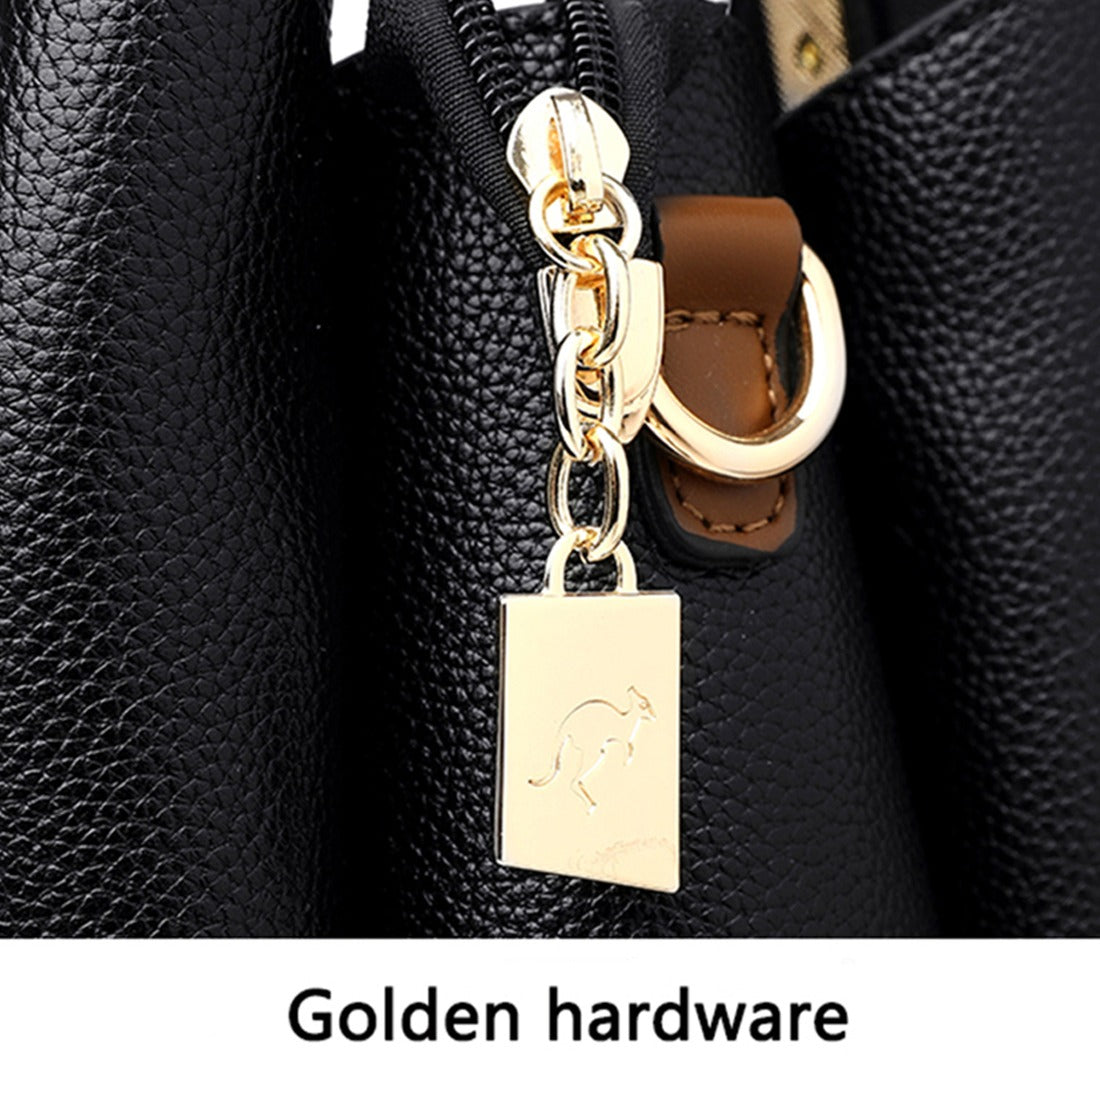 Luxury Designer Top Handle Handbag For Women | Casual Crossbody Tote Shoulder Bag Zaappy